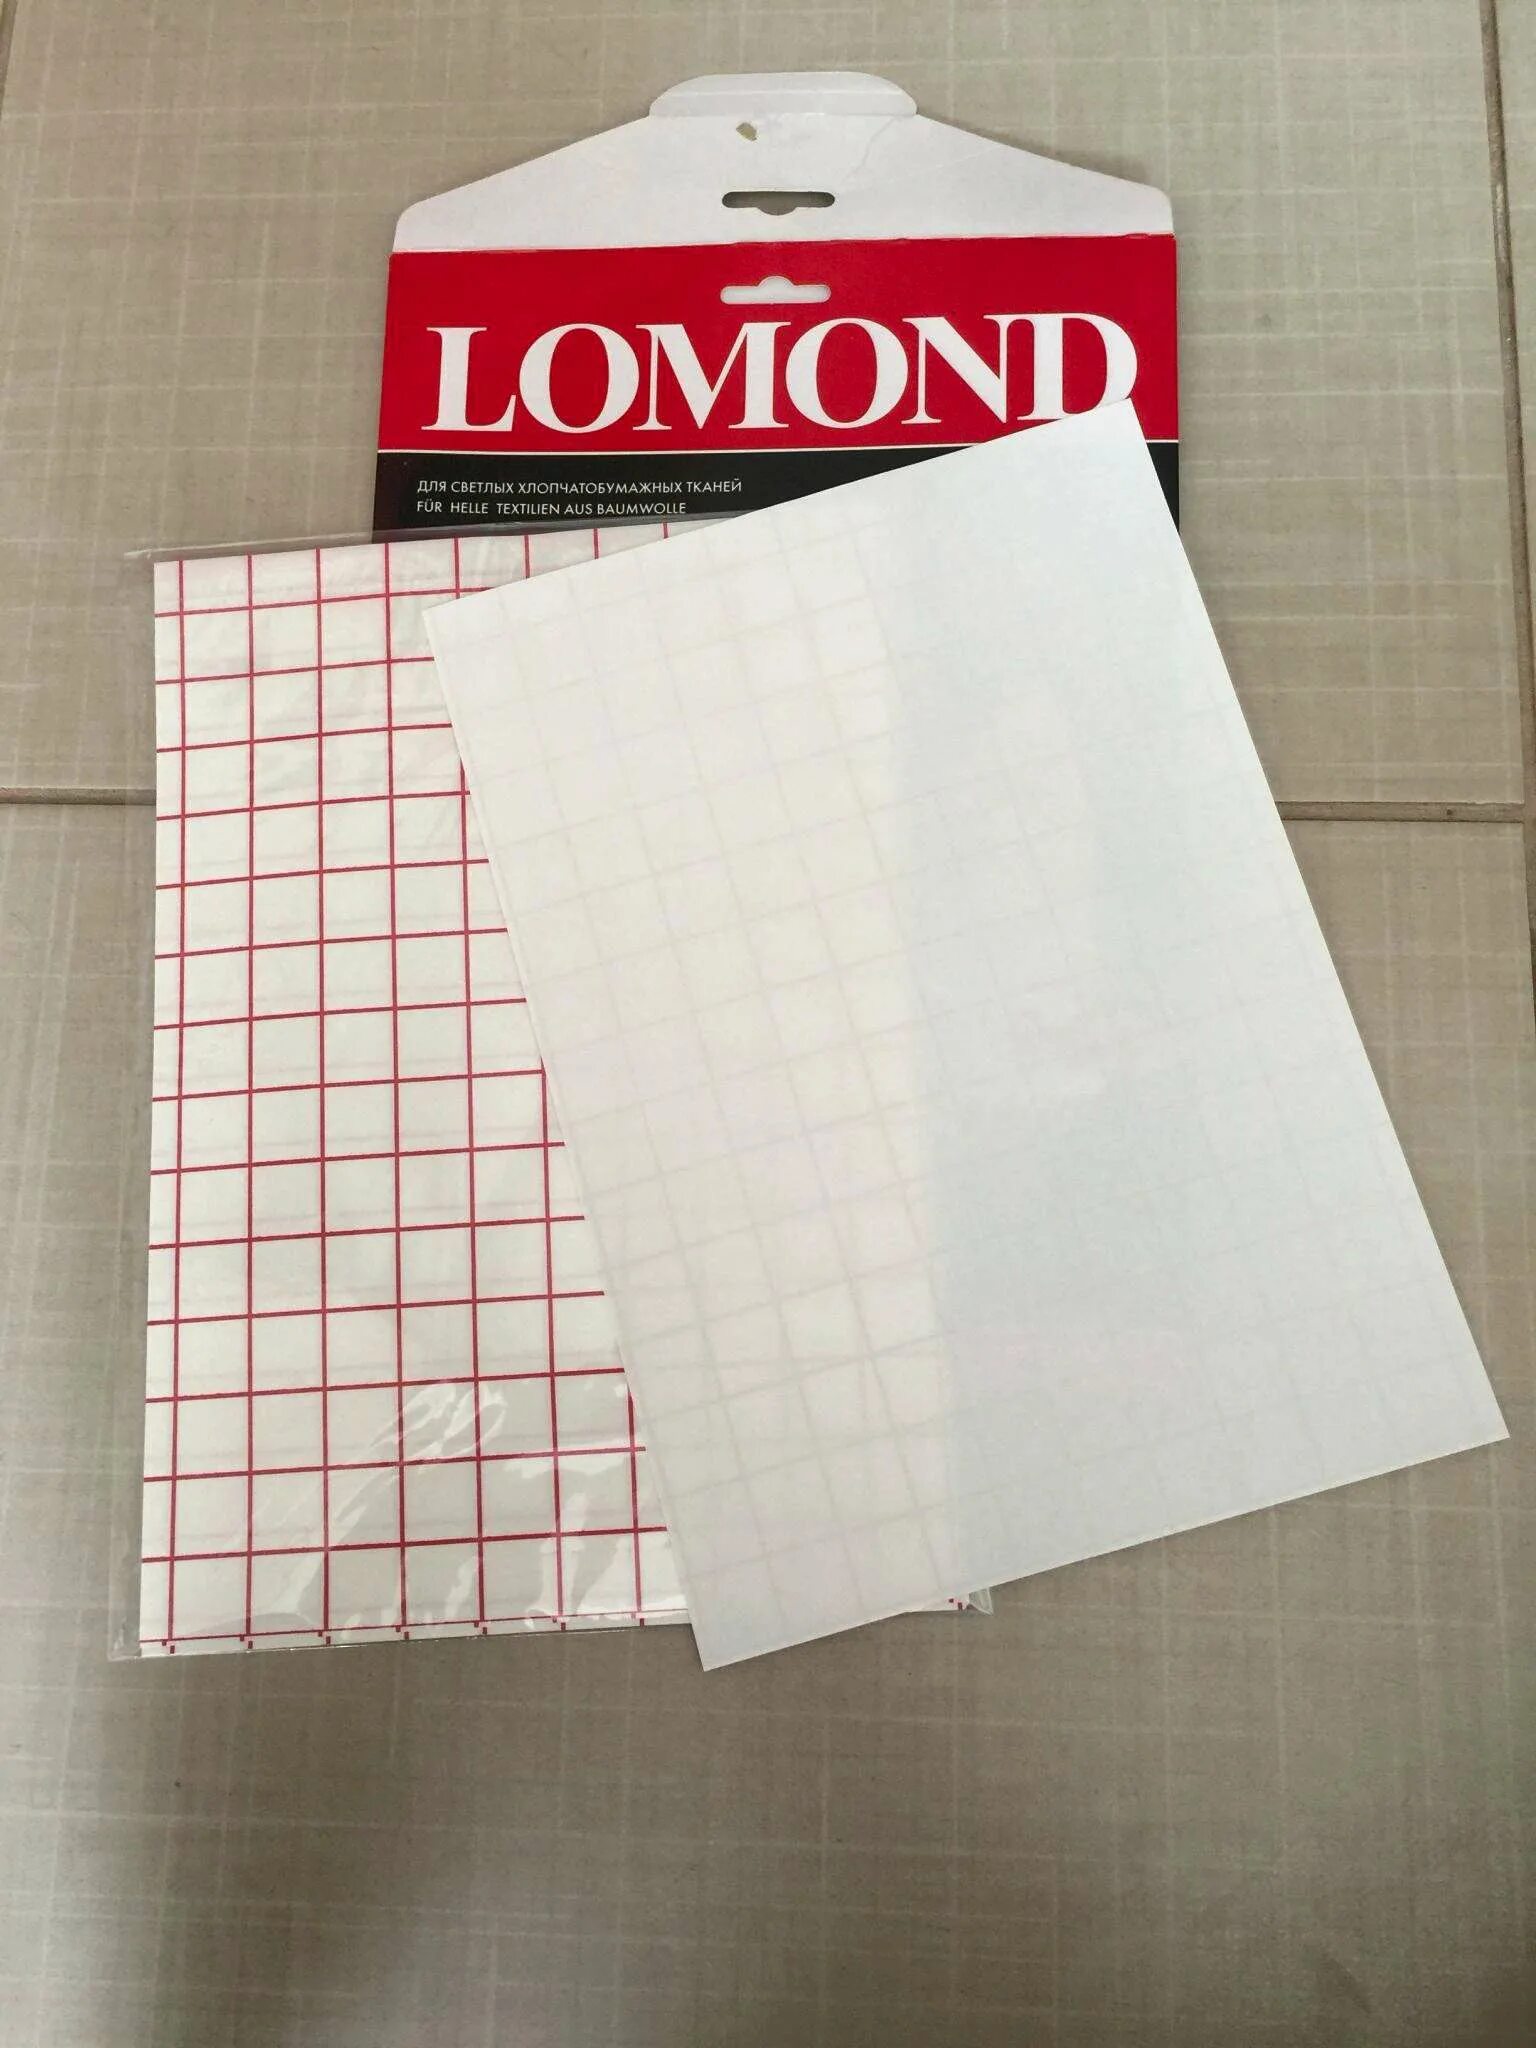 Ломонд термотрансферная бумага для темных тканей. Термотрансферная бумага Lomond. Трансфер ломонд для темных тканей. Термотрансферная бумага для светлых тканей. Термотрансферная бумага купить